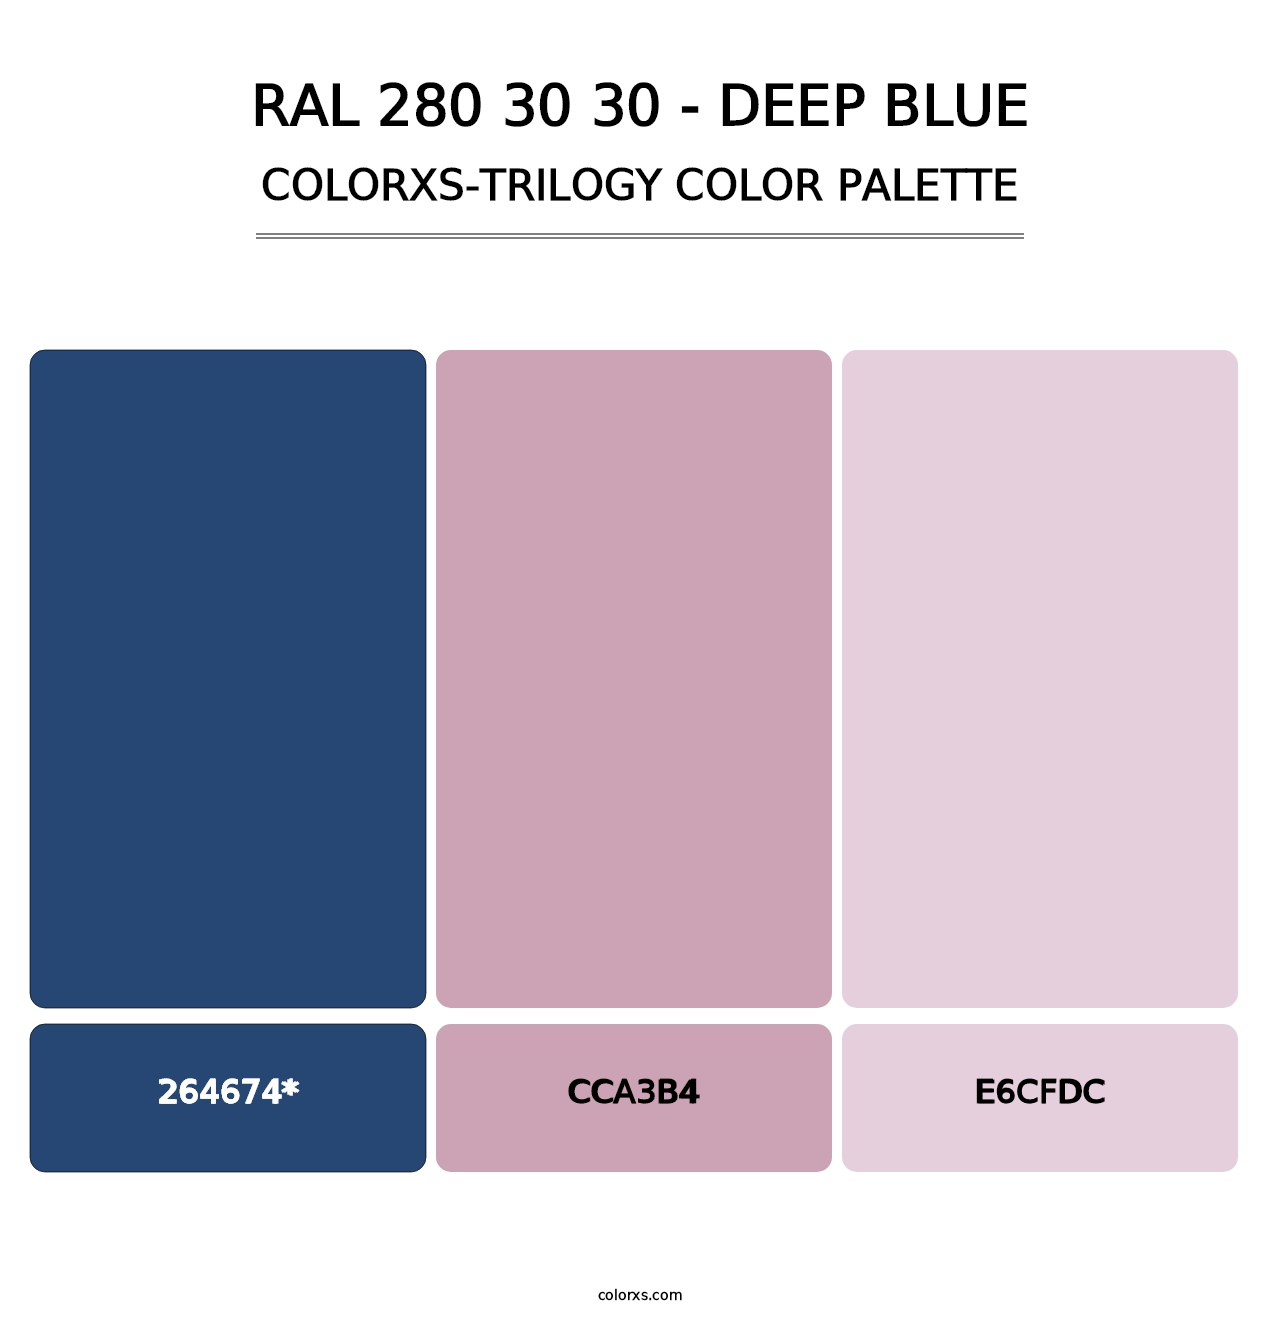 RAL 280 30 30 - Deep Blue - Colorxs Trilogy Palette